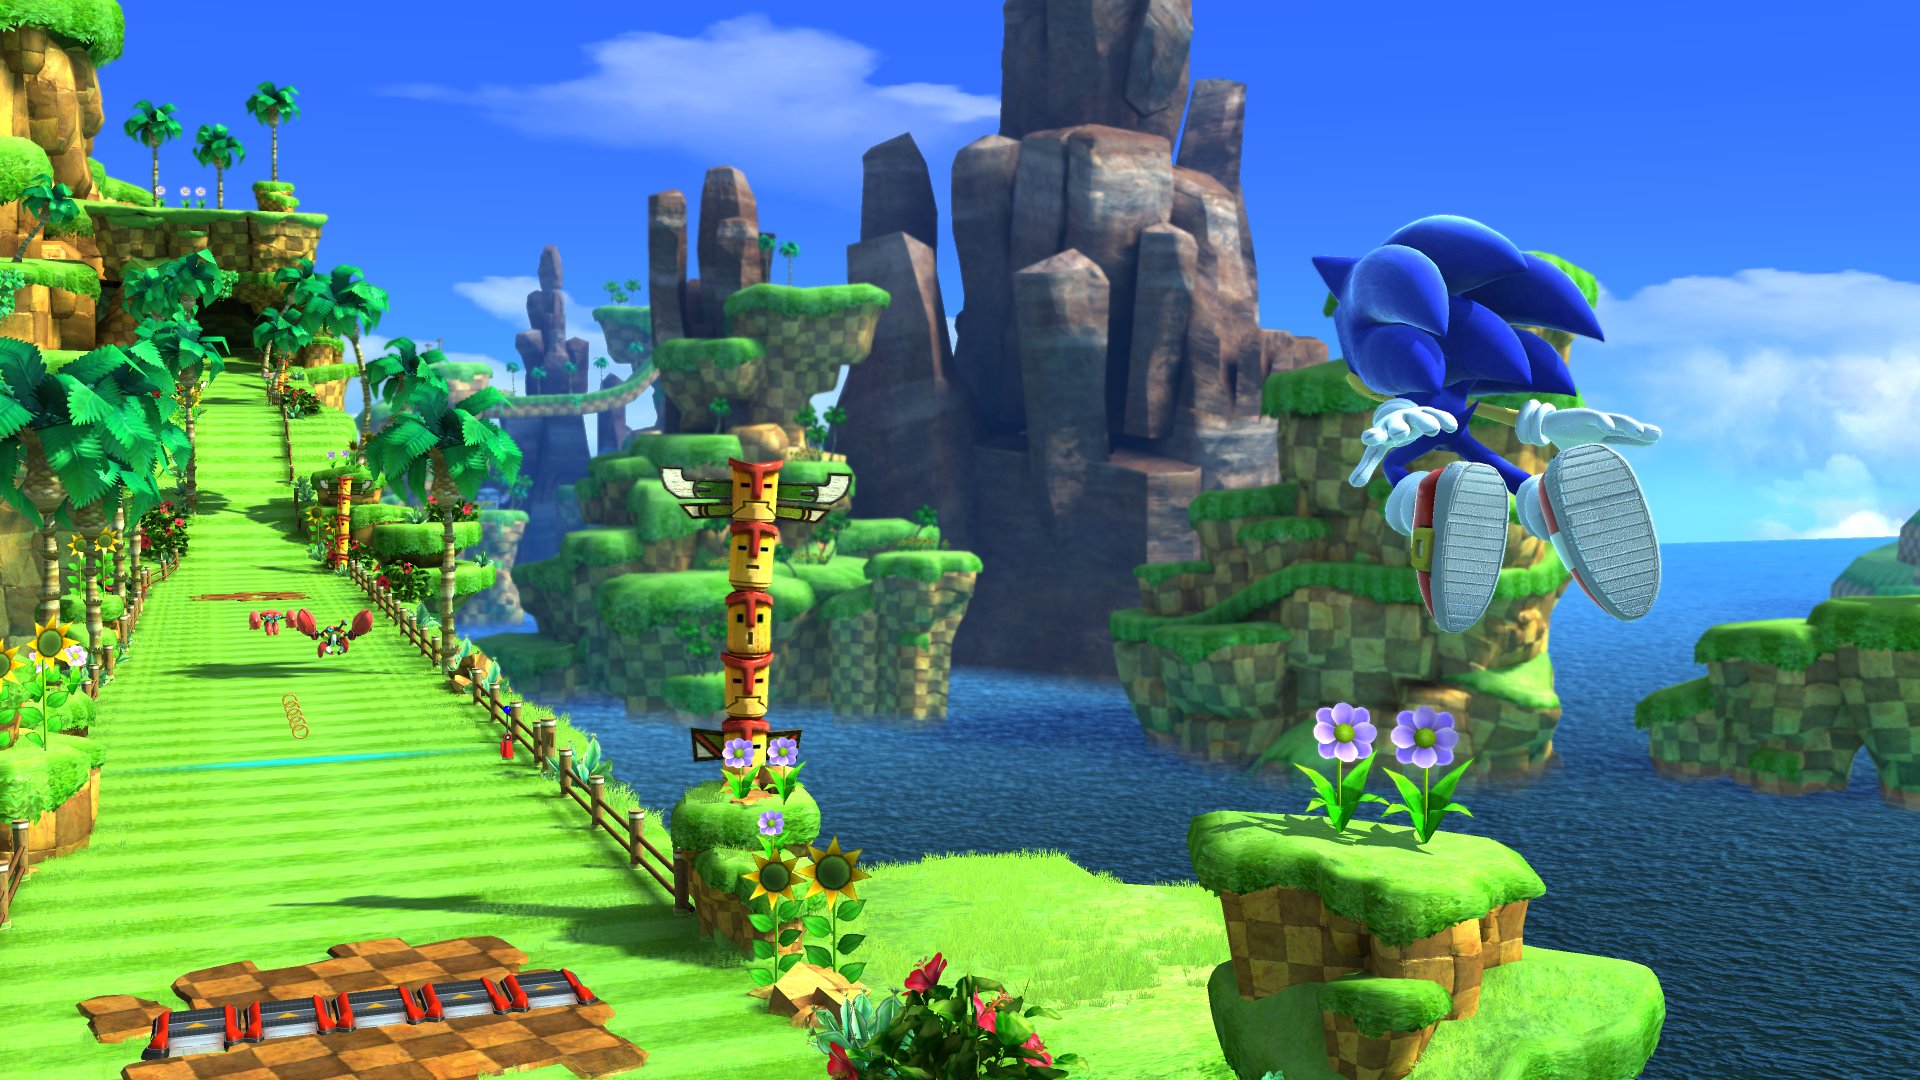 Sonic Generations: Bạn đang tìm kiếm một trò chơi hành động vô cùng thú vị? Hãy cùng trải nghiệm Sonic Generations - một trong những phiên bản thành công nhất của dòng game Sonic! Tận hưởng sự kết hợp hoàn hảo giữa Sonic truyền thống và phiên bản cập nhật mới nhất. Hãy xem hình ảnh liên quan để thấy rõ hơn nhé!